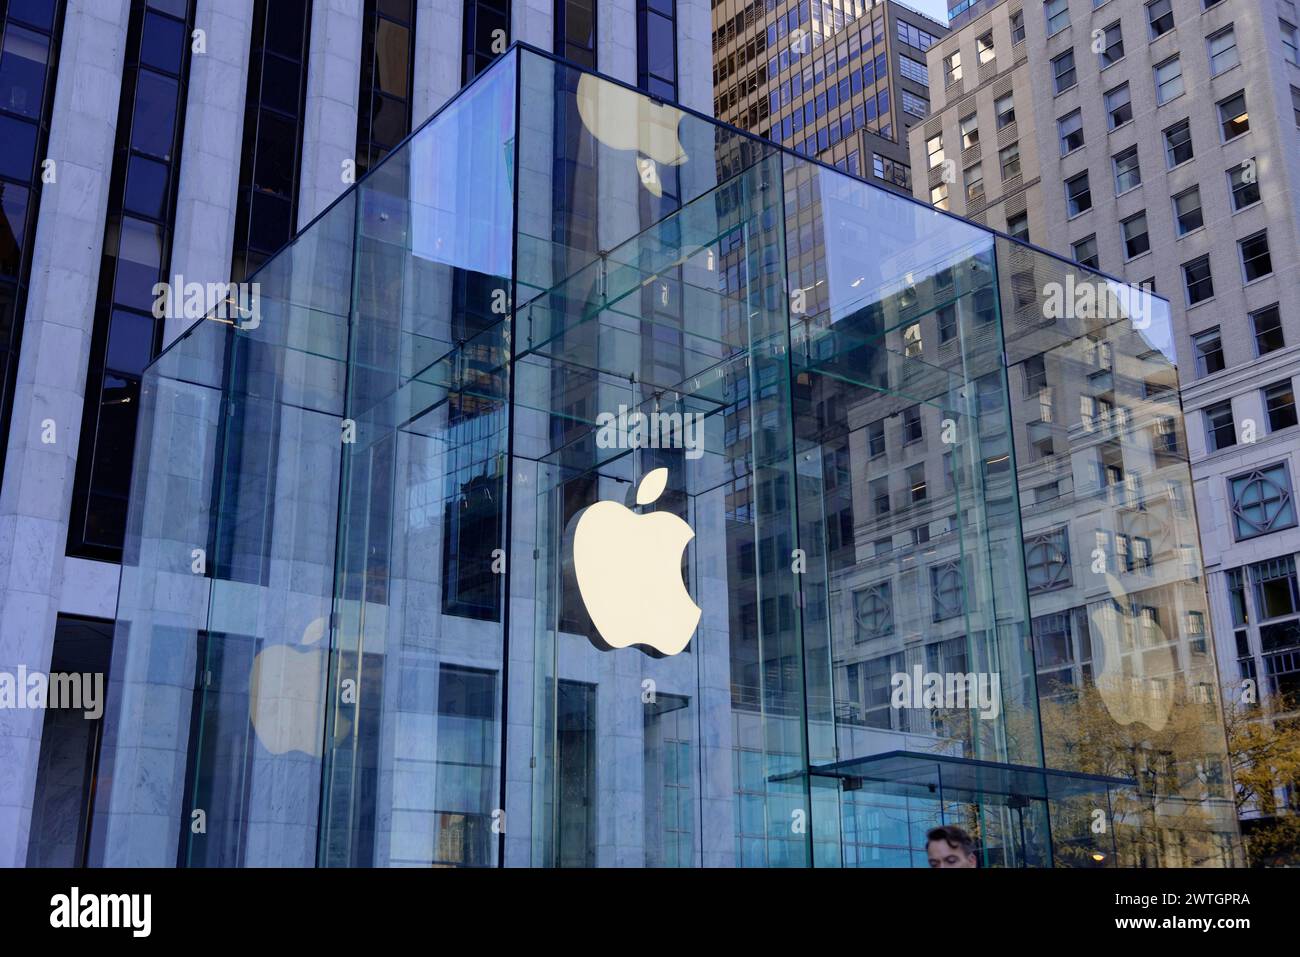 Façade en verre de l'Apple Store avec des bâtiments réfléchis et des lignes épurées, Manhattan, New York City, New York, États-Unis, Amérique du Nord Banque D'Images